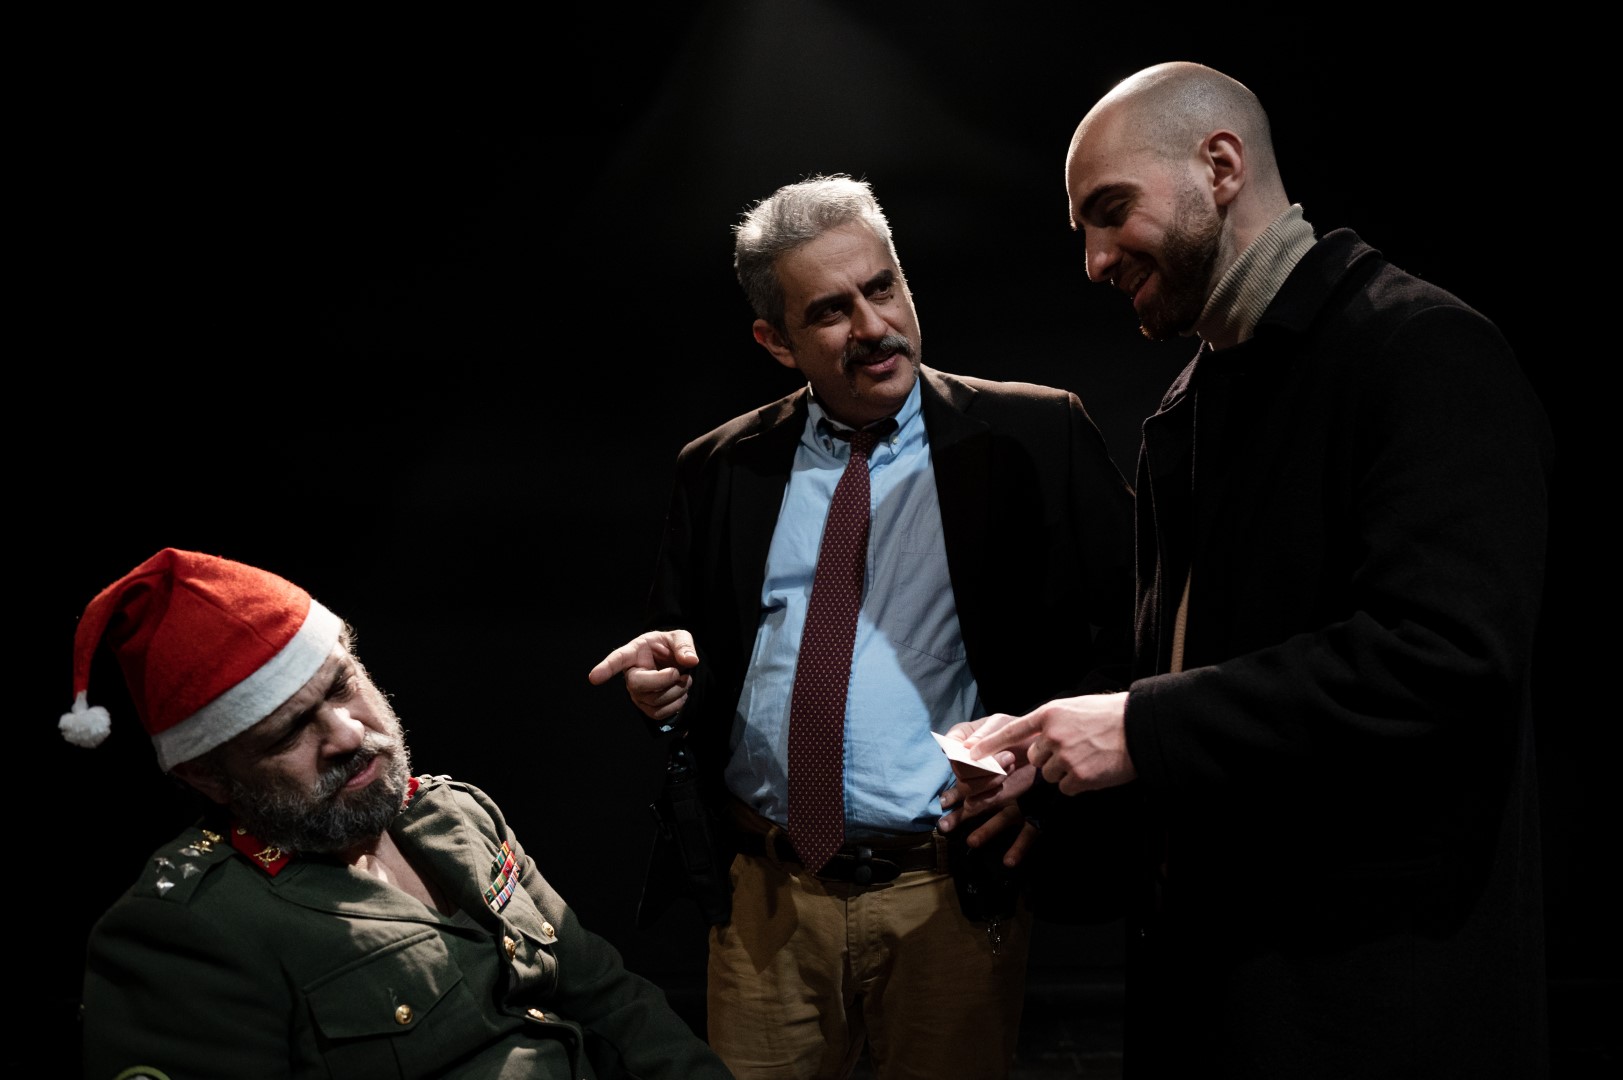 Χασάπης, του Νικολά Μπιγιόν για 2η χρονιά στο Θέατρο Αλκμήνη